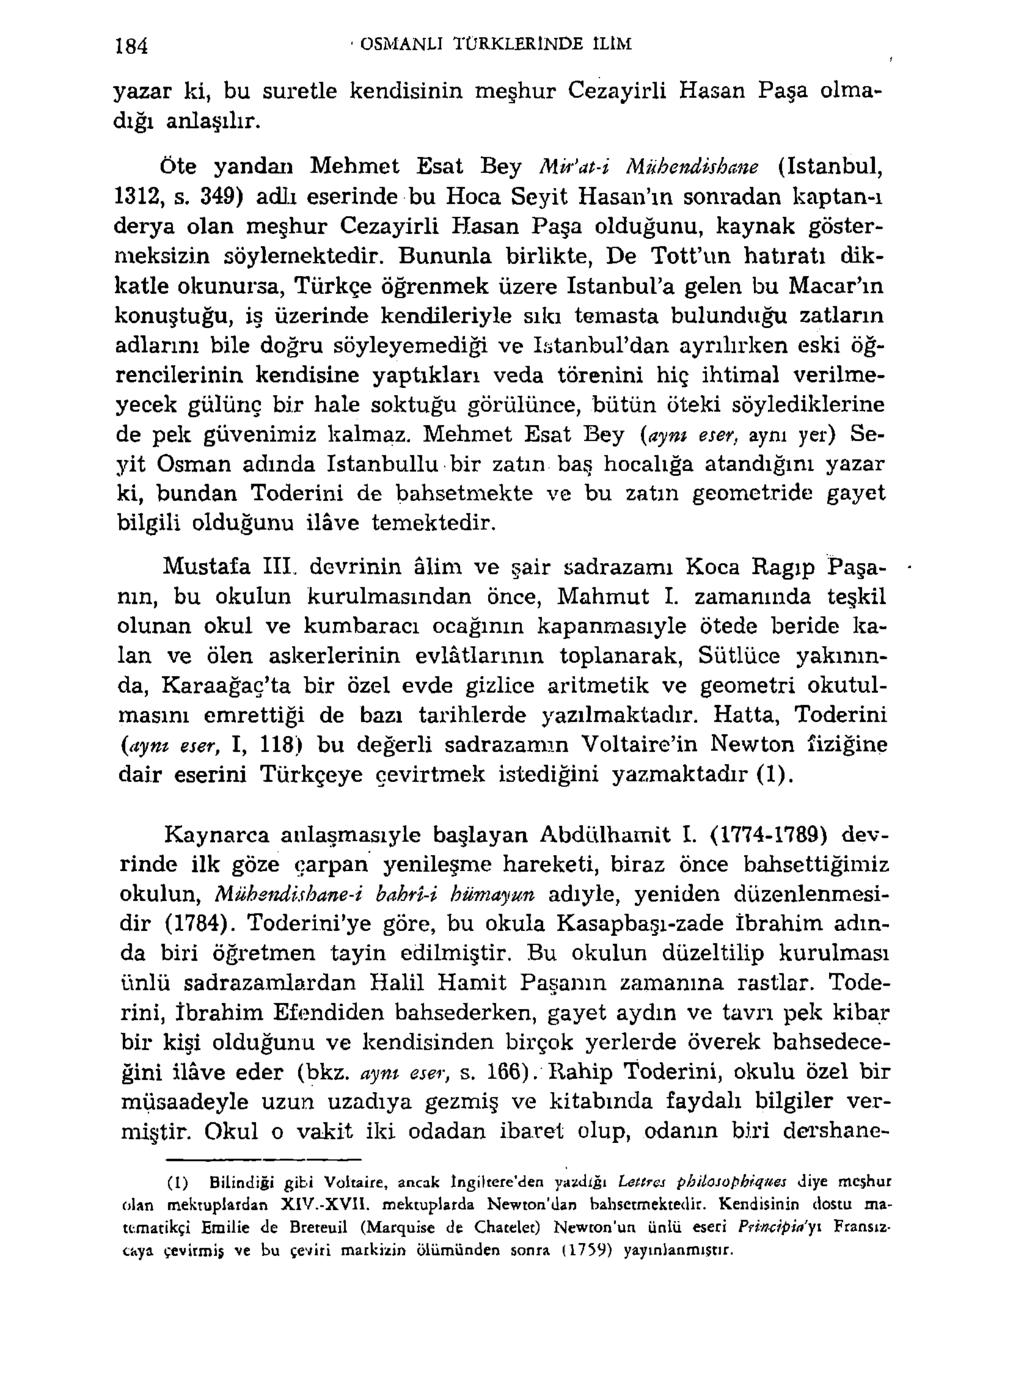 184 OSMANLI TÜRKLERİNDE İLİM yazar ki, bu suretle kendisinin meşhur Cezayirli Hasan Paşa olmadığı anlaşılır. Öte yandan Mehmet Esat Bey Mk'at-i lauhendishane (istanbul, 1312, s.